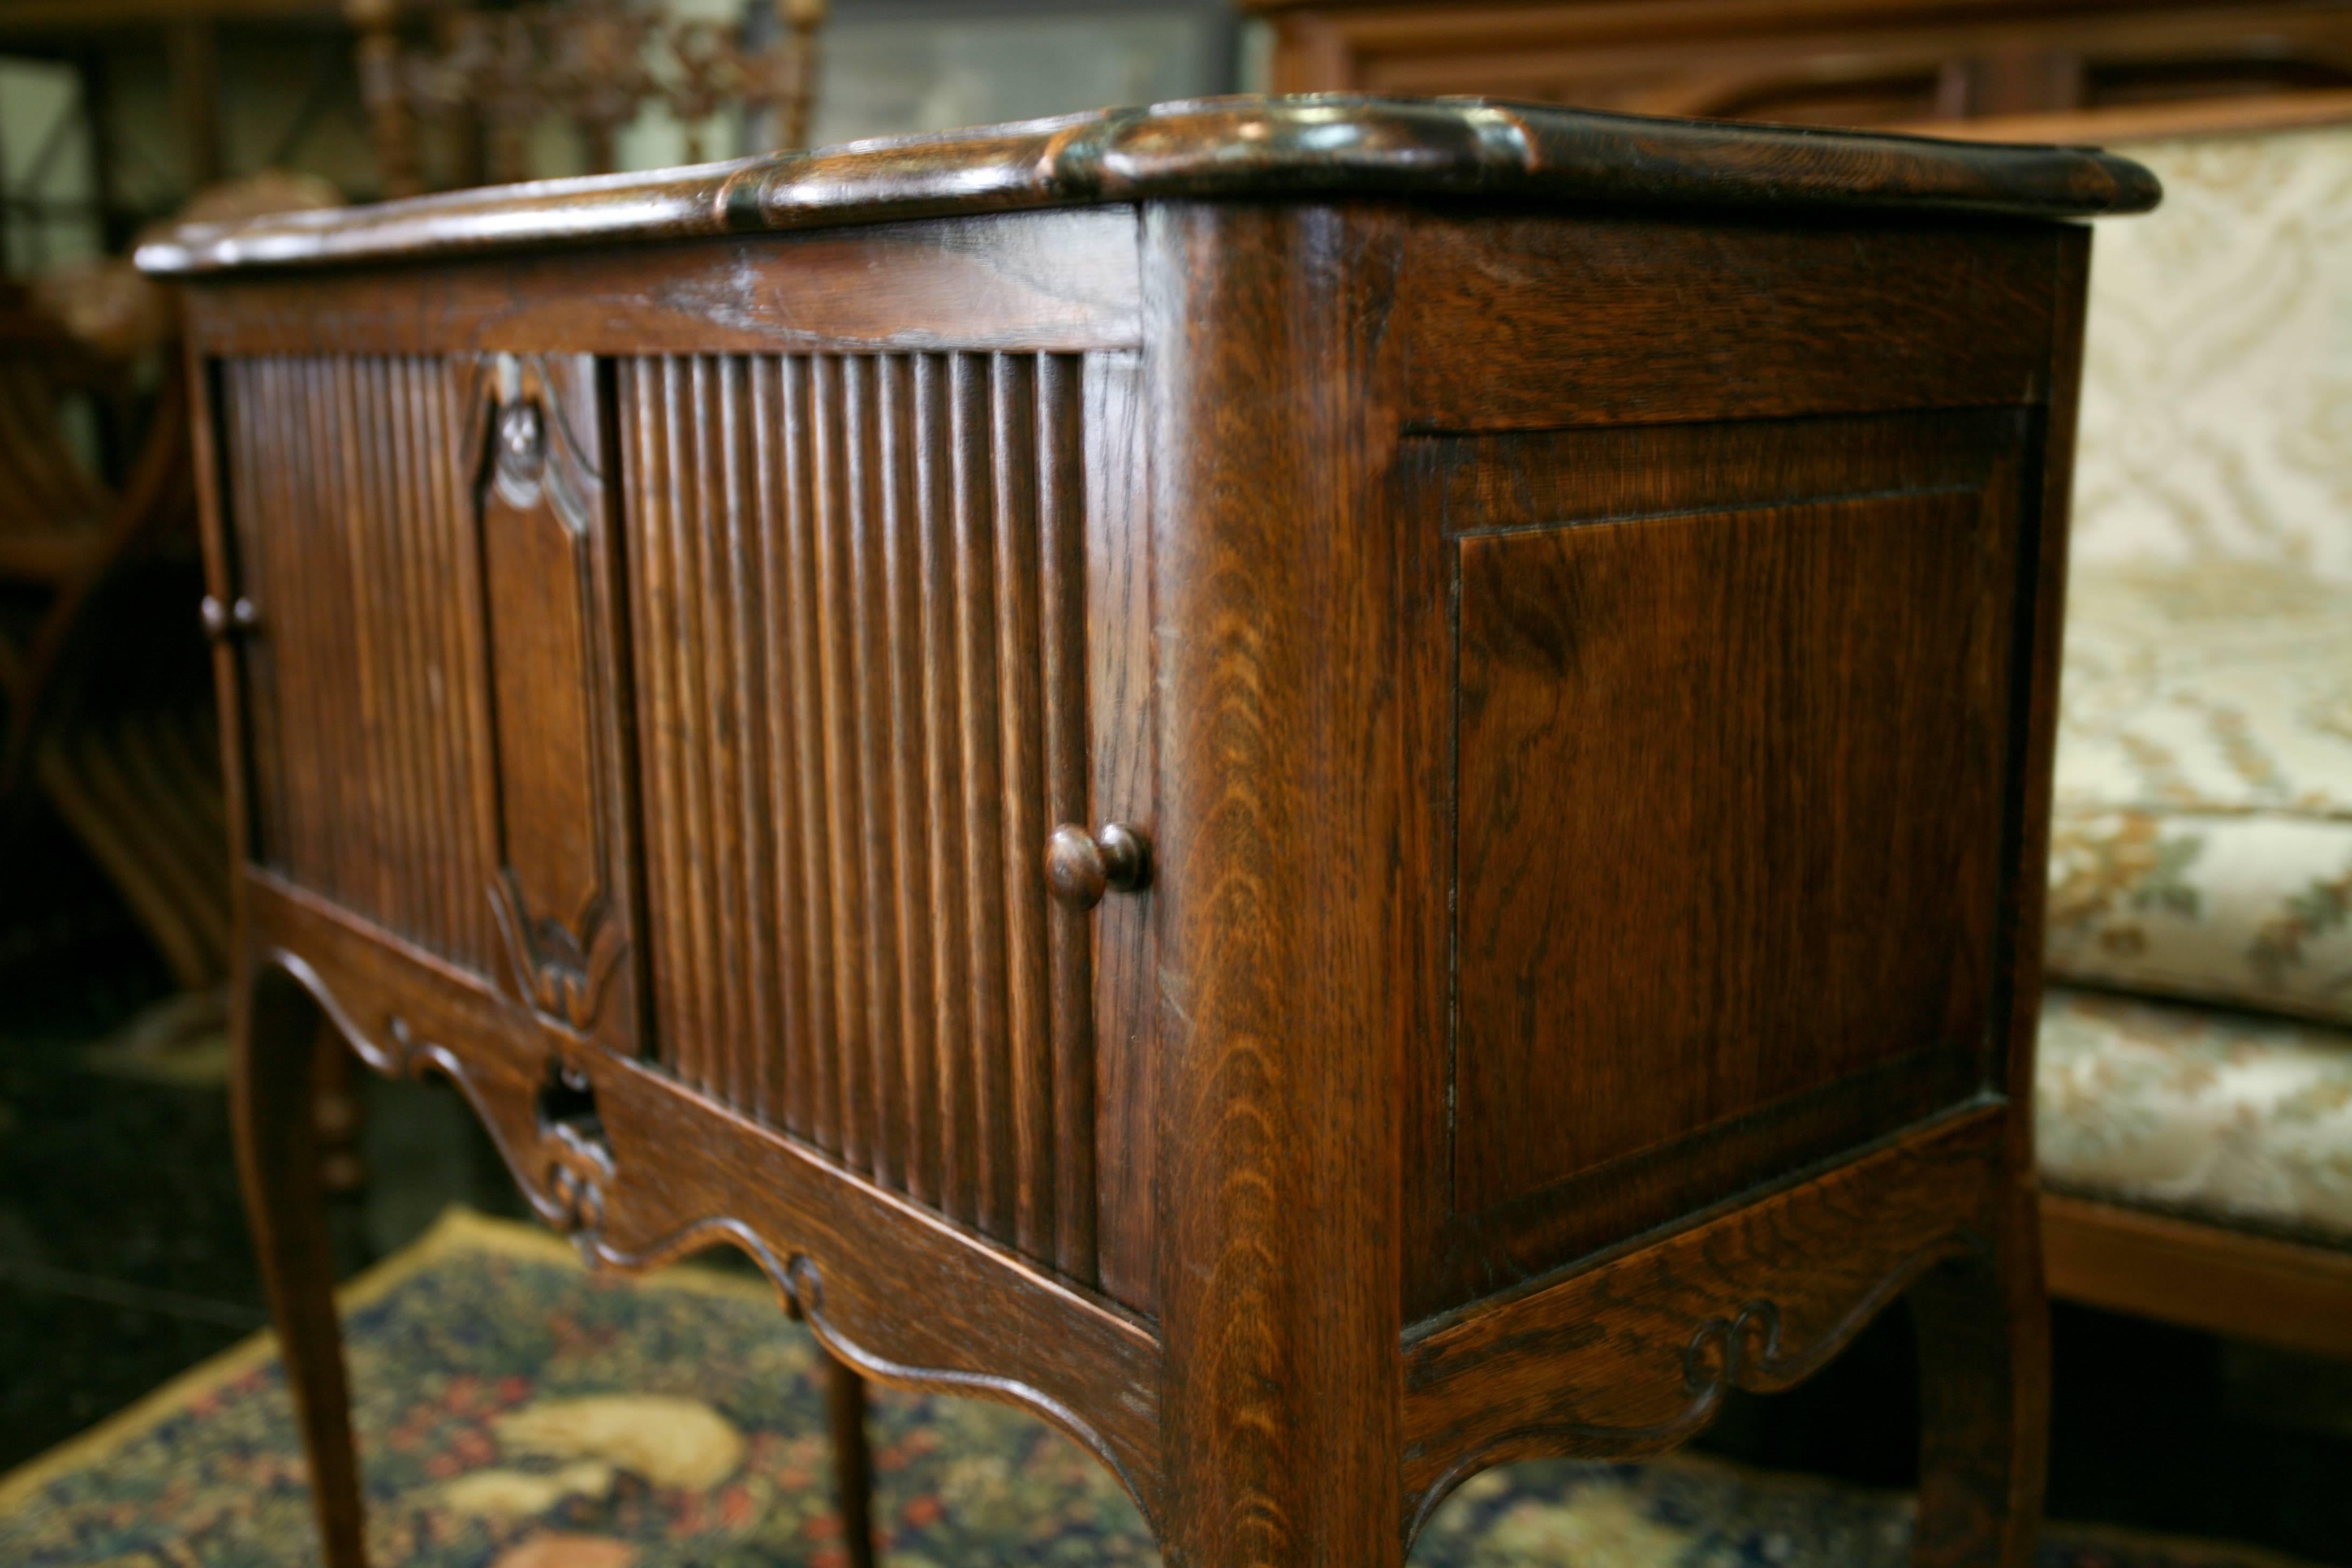 französischer Beistellschrank oder Nachttisch aus dem 19. Jahrhundert im Louis-XVI-Stil. Er ist aus handgeschnitztem Nussbaumholz gefertigt, hat zwei versteckte Schiebetüren und befindet sich in perfektem antiken Zustand mit nur geringen